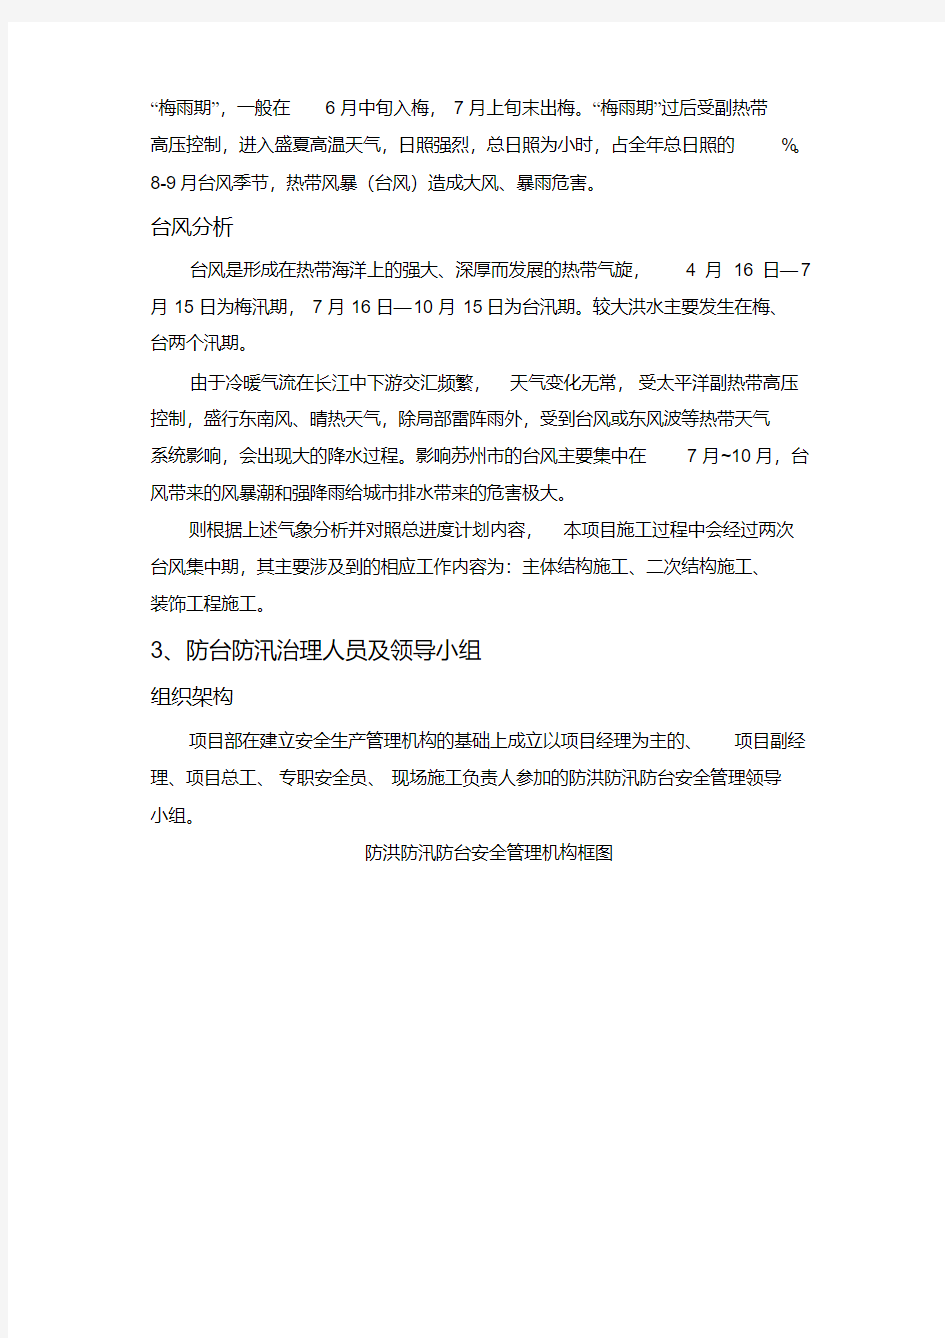 防台防汛专项方案.pdf